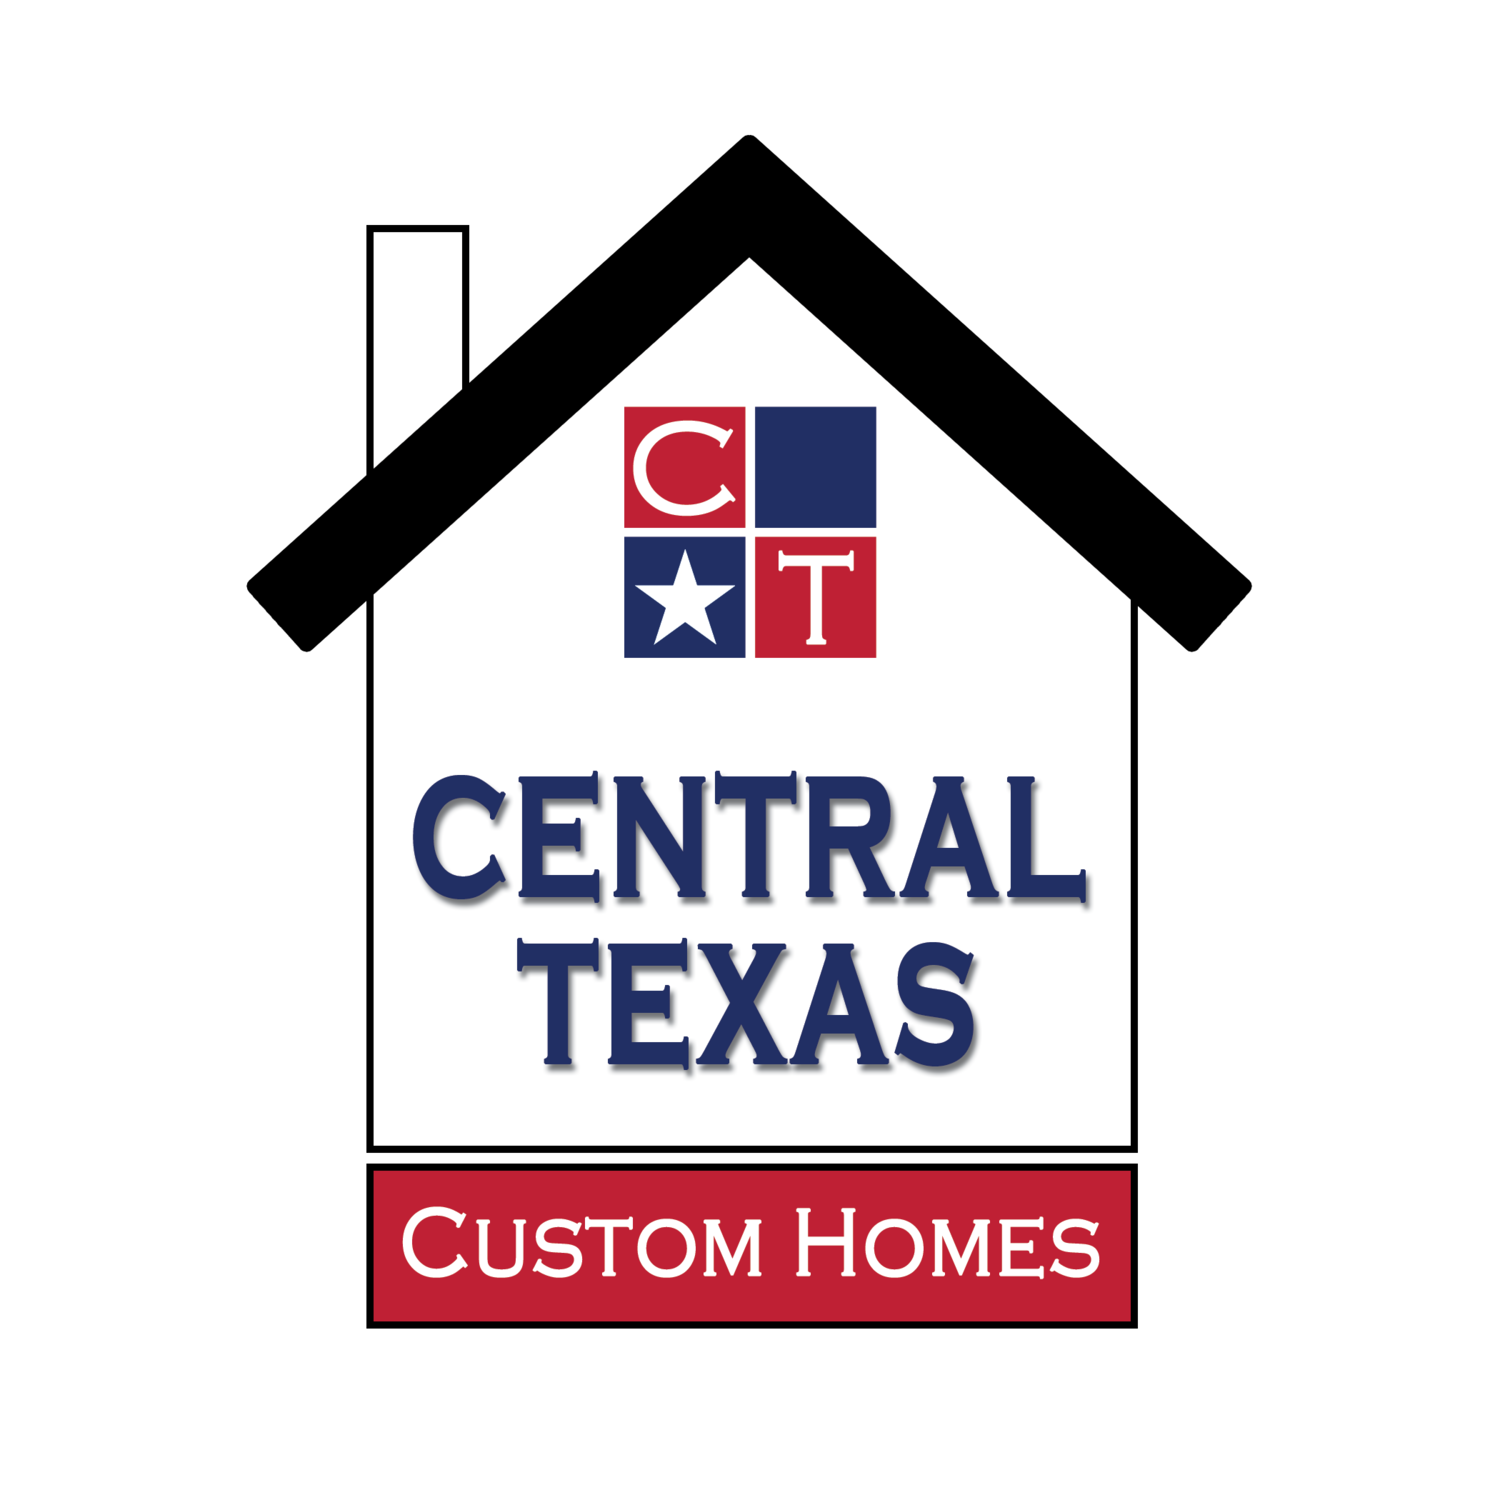 Central Texas Custom Homes